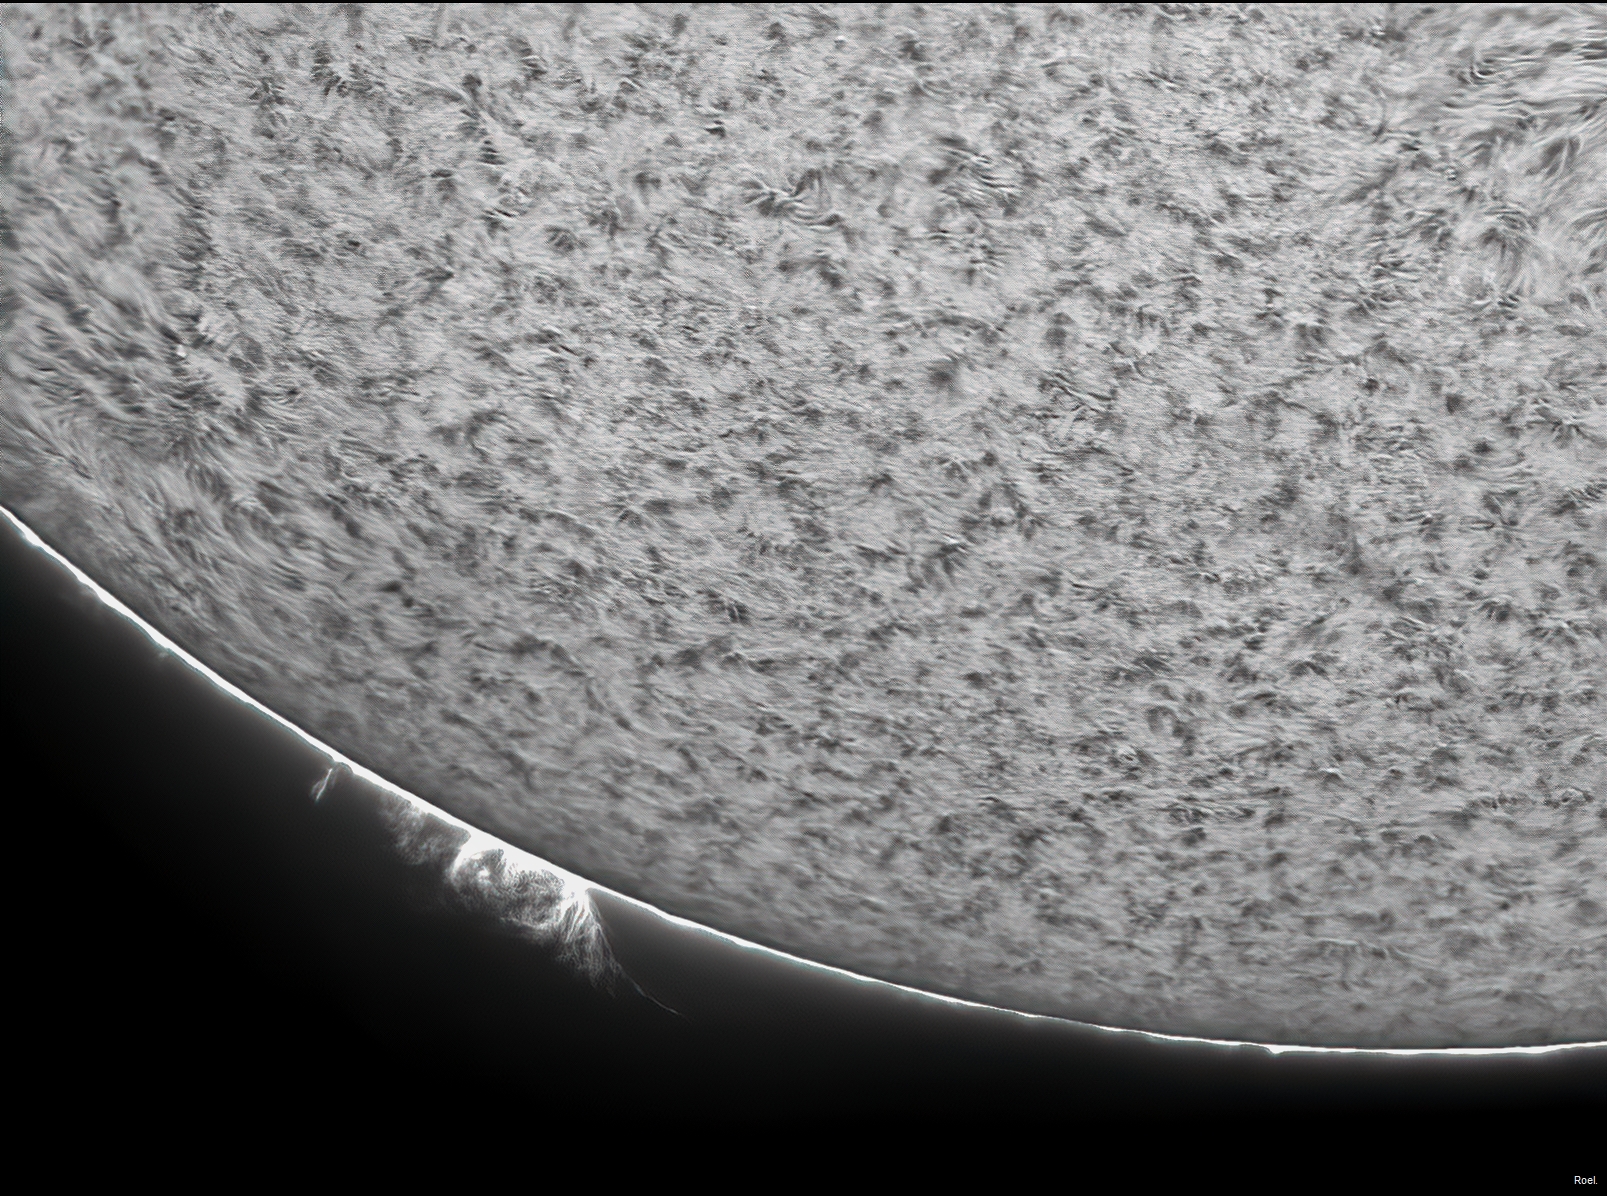 Sol del 16 de noviembre del 2020-Stellarvue-Daystar-4 pos.jpg